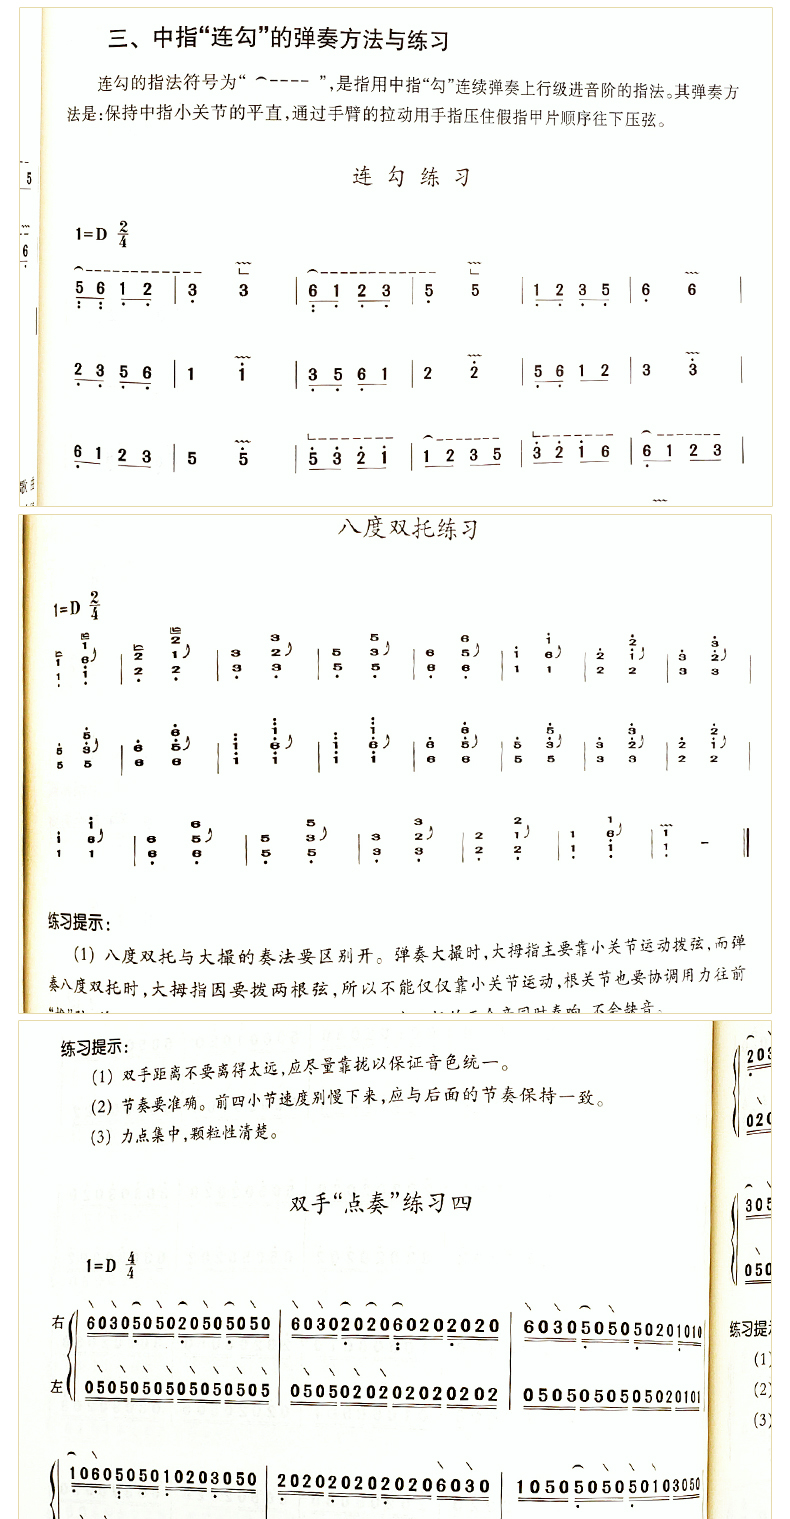 后是古筝演奏指法记谱符号一览表.